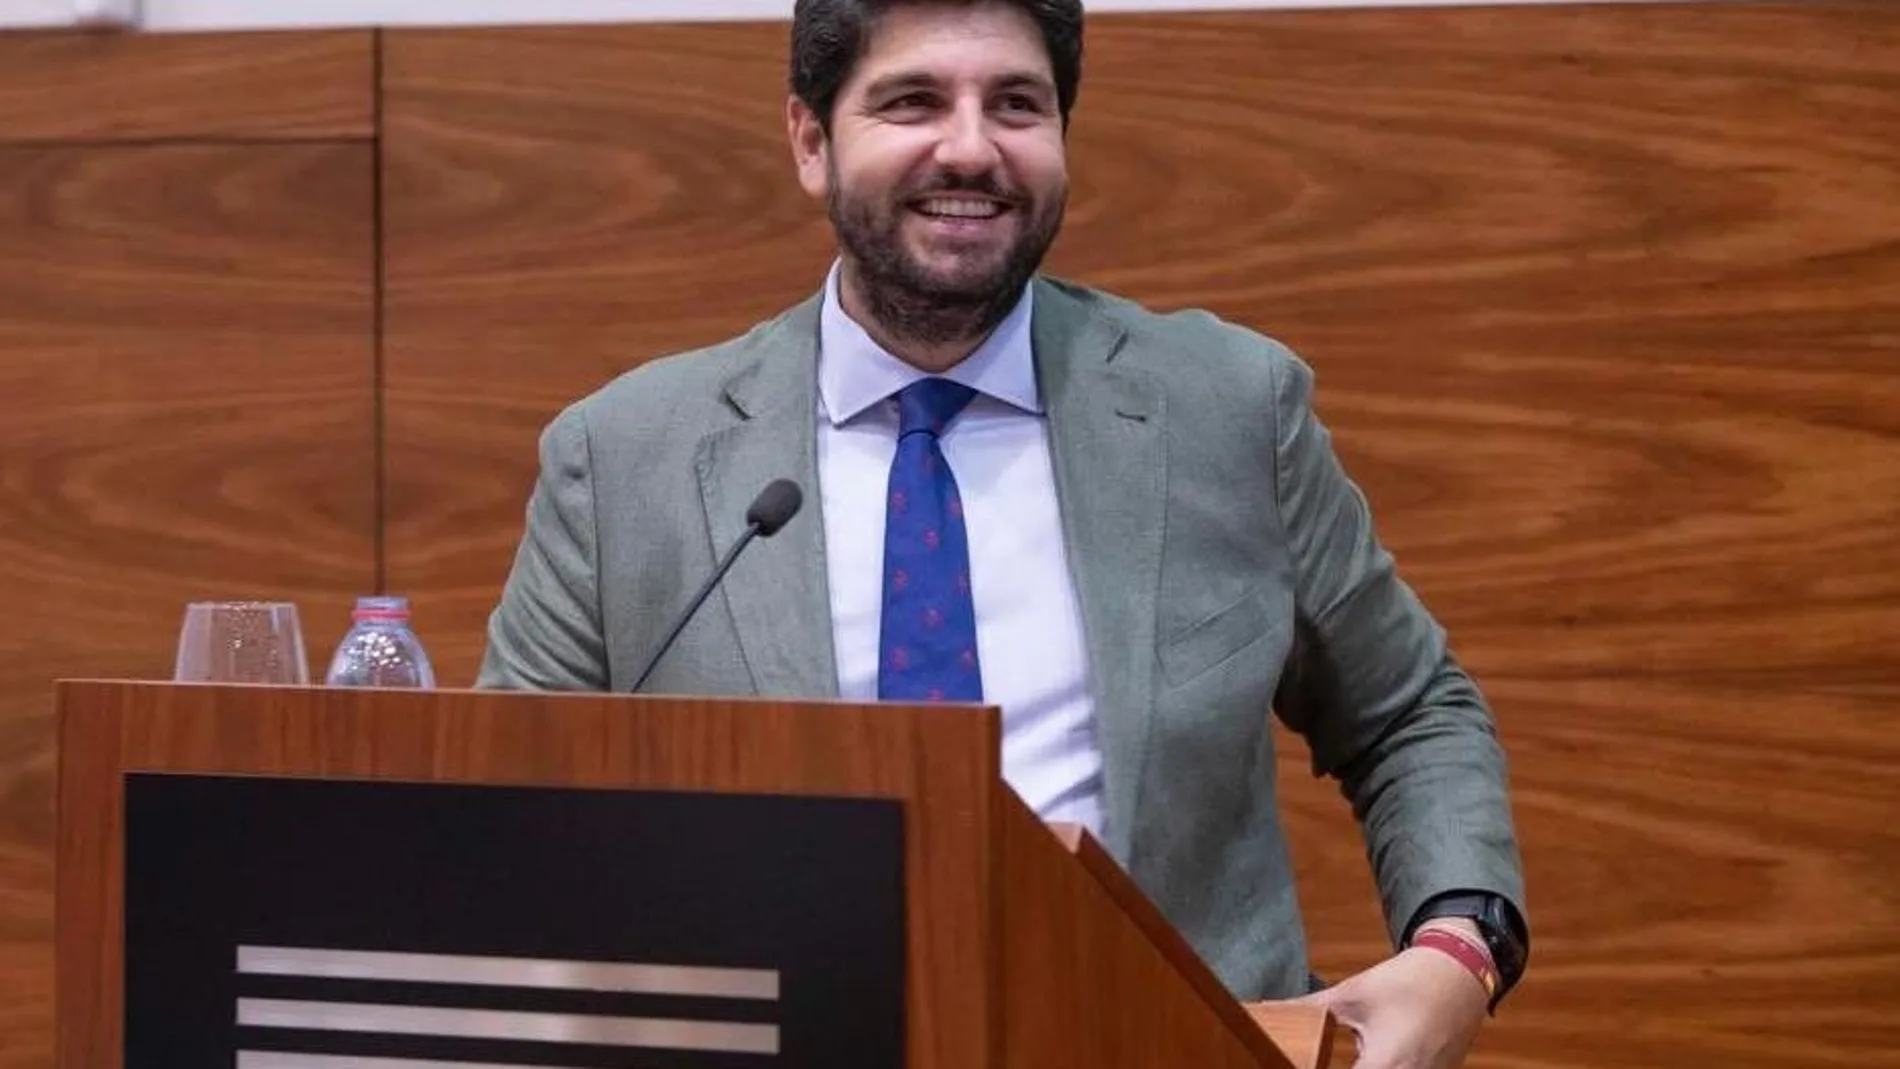 Fernando López Miras recibirá el próximo viernes el respaldo en primera votación de PP, Cs y Vox para presidir la Región de Murcia, tal como comunicaron ayer al presidente de la Asamblea Regional, Alberto Castillo. LA RAZÓN